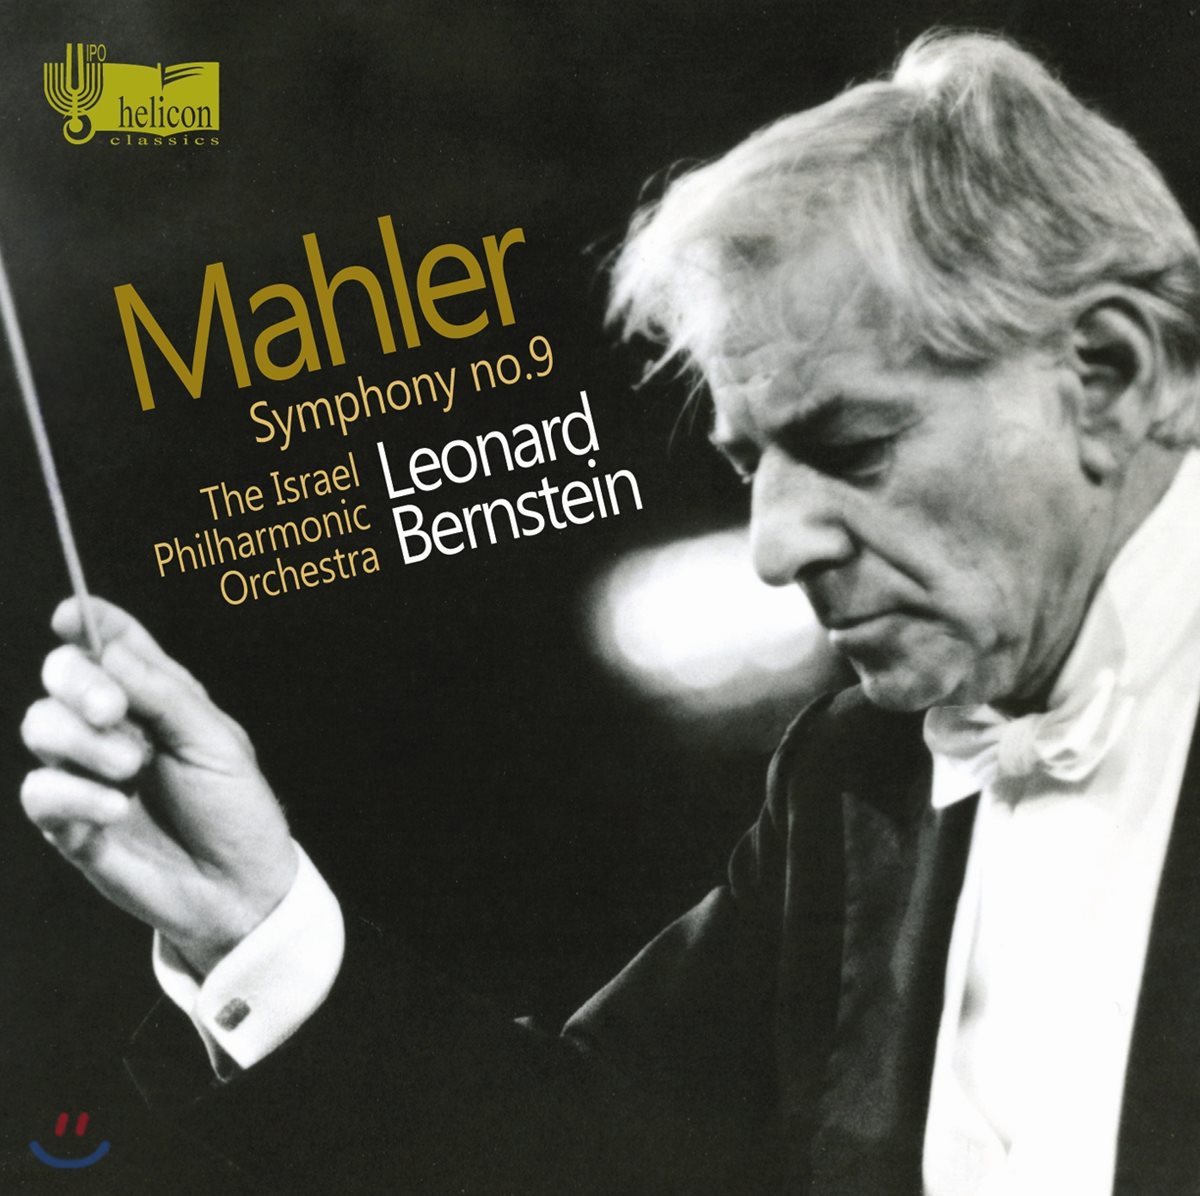 Leonard Berinstin 말러: 교향곡 9번 (Mahler: Symphony No.9) 레너드 번스타인, 이스라엘 필하모닉